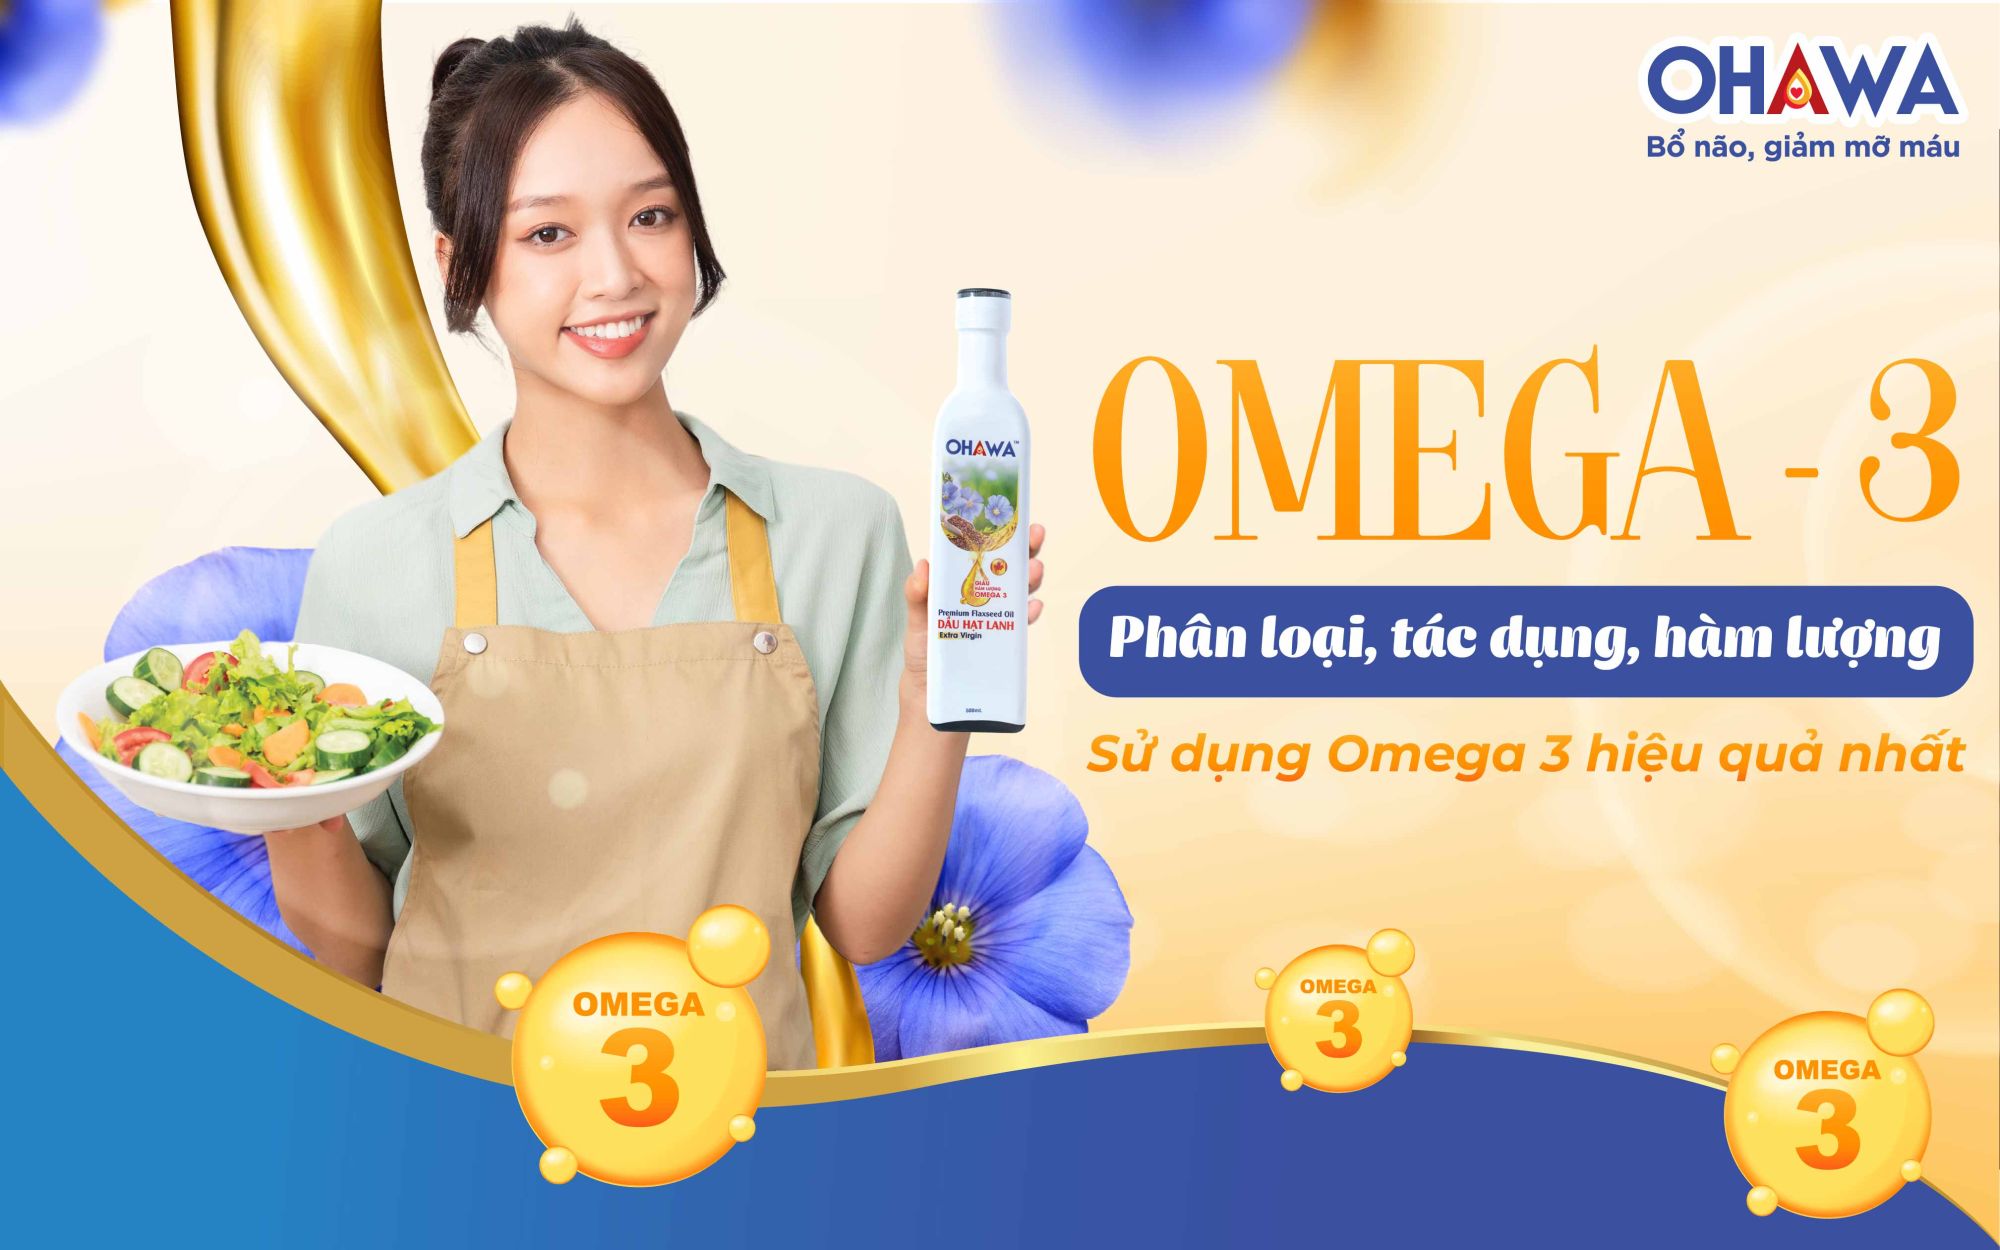 Omega 3: Phân loại, tác dụng, hàm lượng sử dụng Omega 3 hiệu quả nhất.